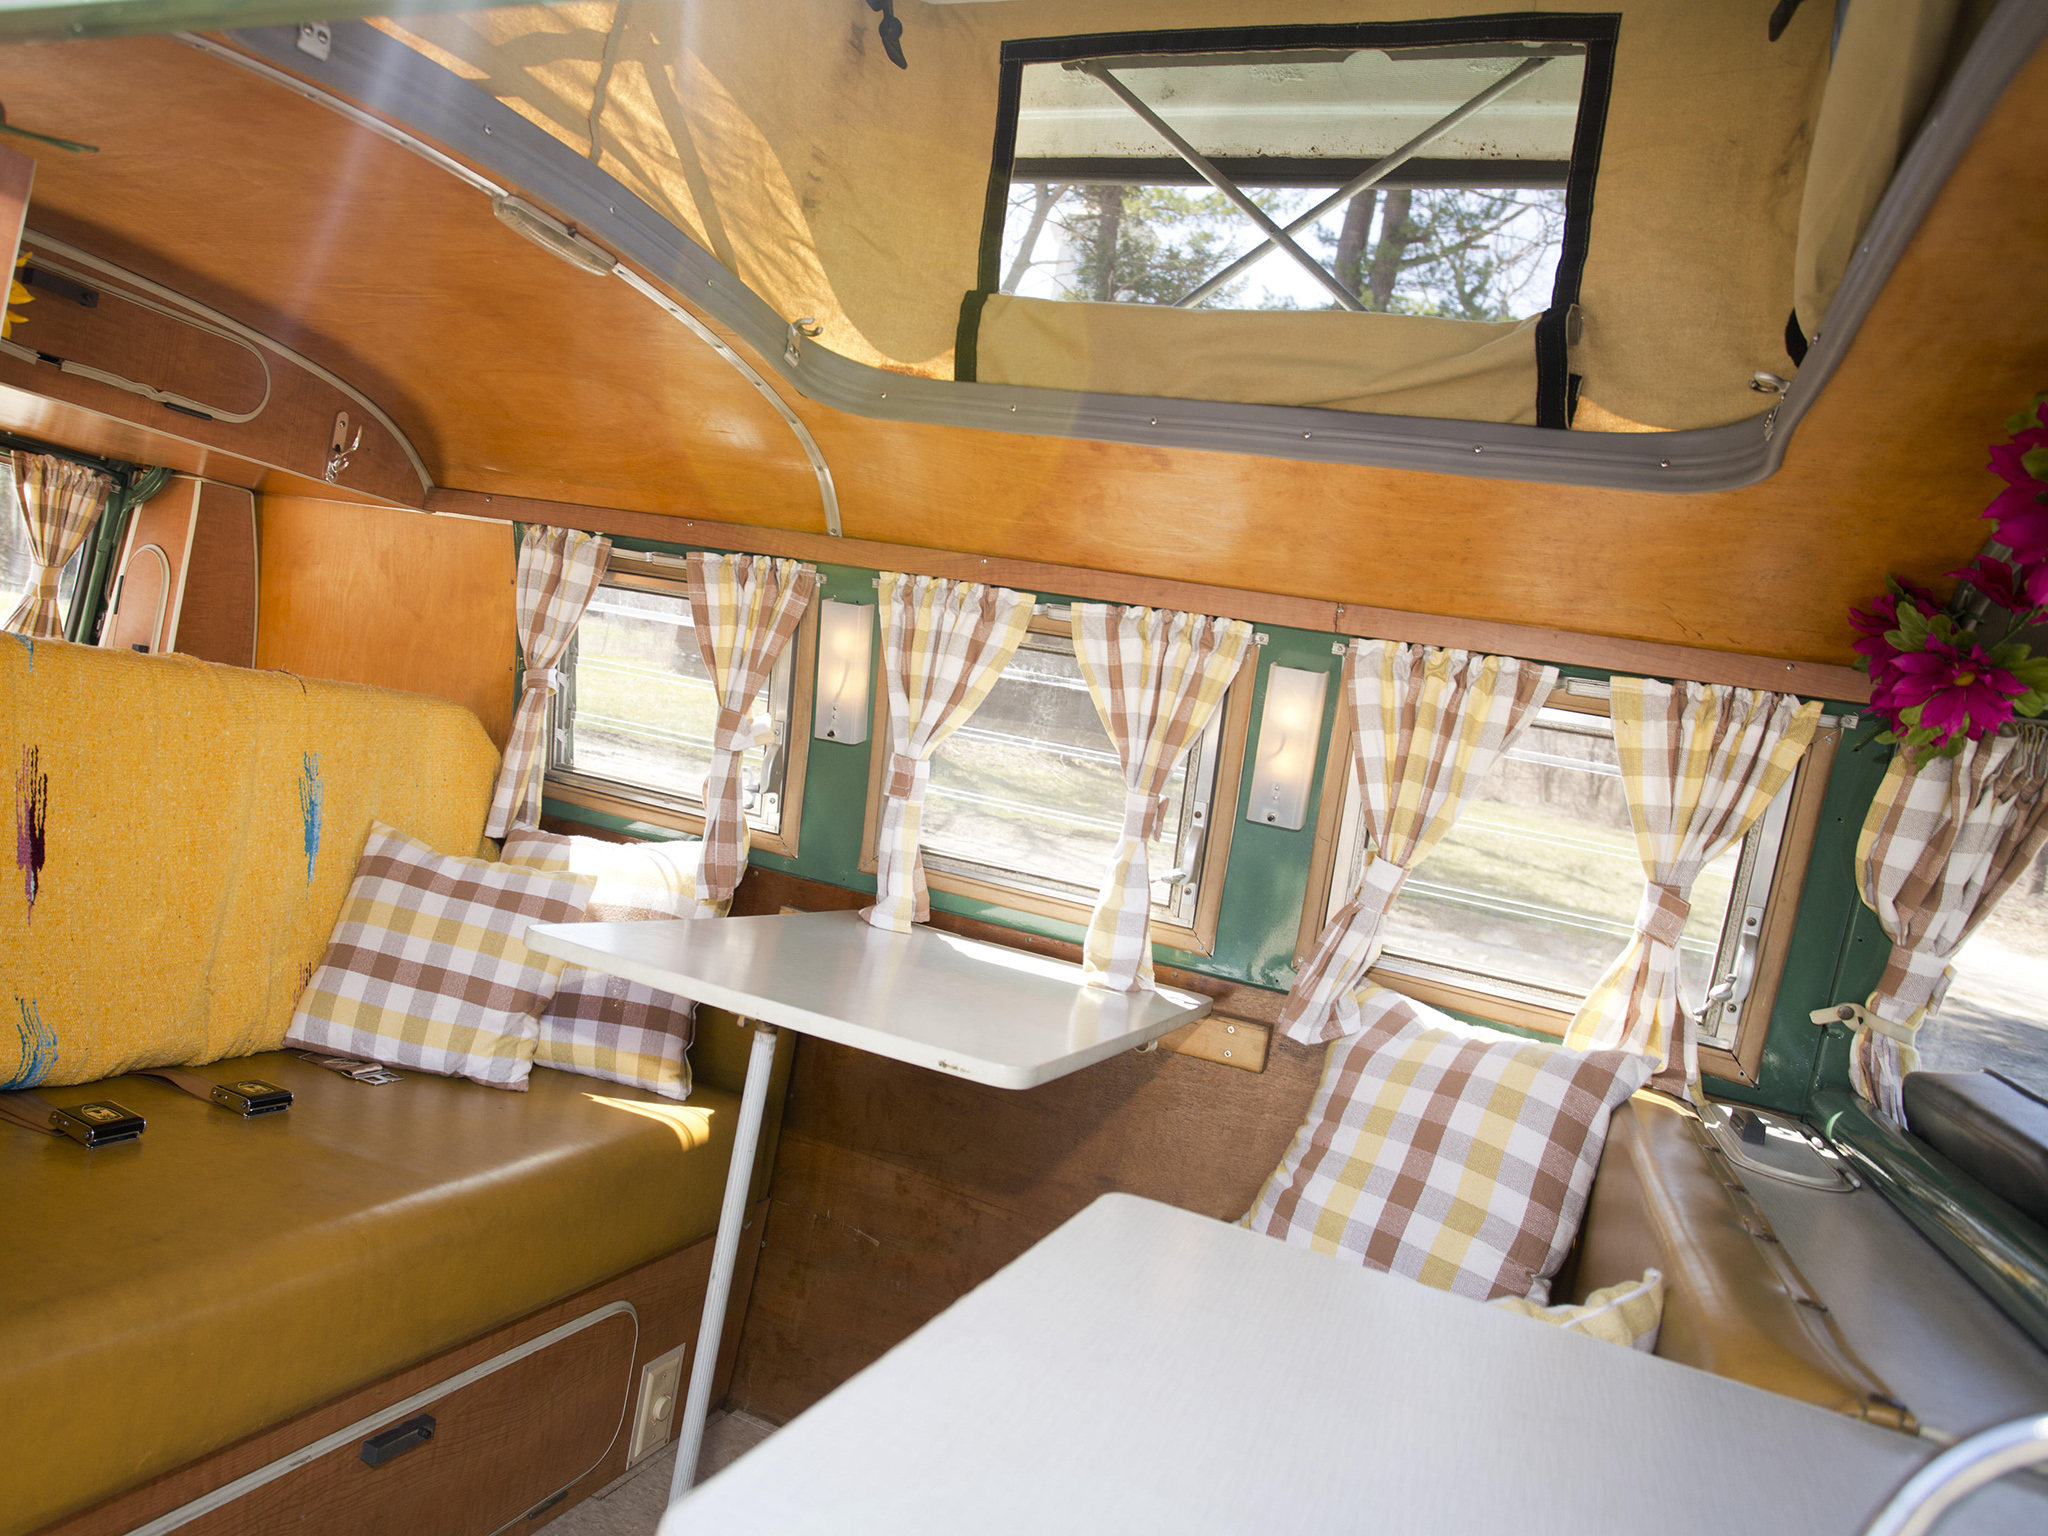  Westfalia Deluxe Camper Van classic interior g wallpaper background